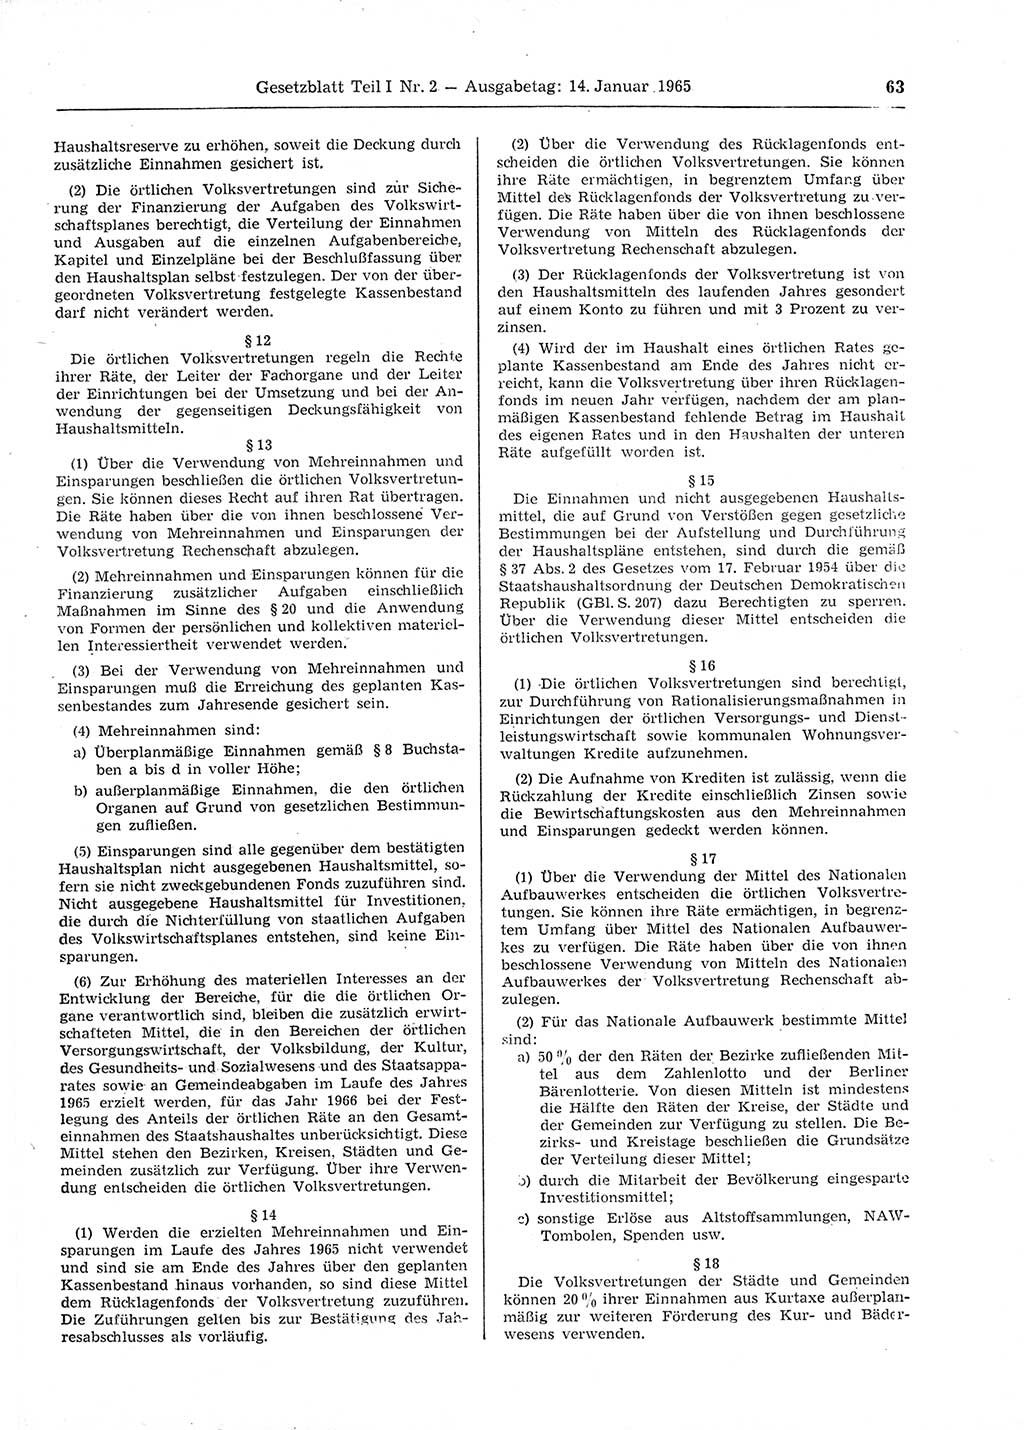 Gesetzblatt (GBl.) der Deutschen Demokratischen Republik (DDR) Teil Ⅰ 1965, Seite 63 (GBl. DDR Ⅰ 1965, S. 63)